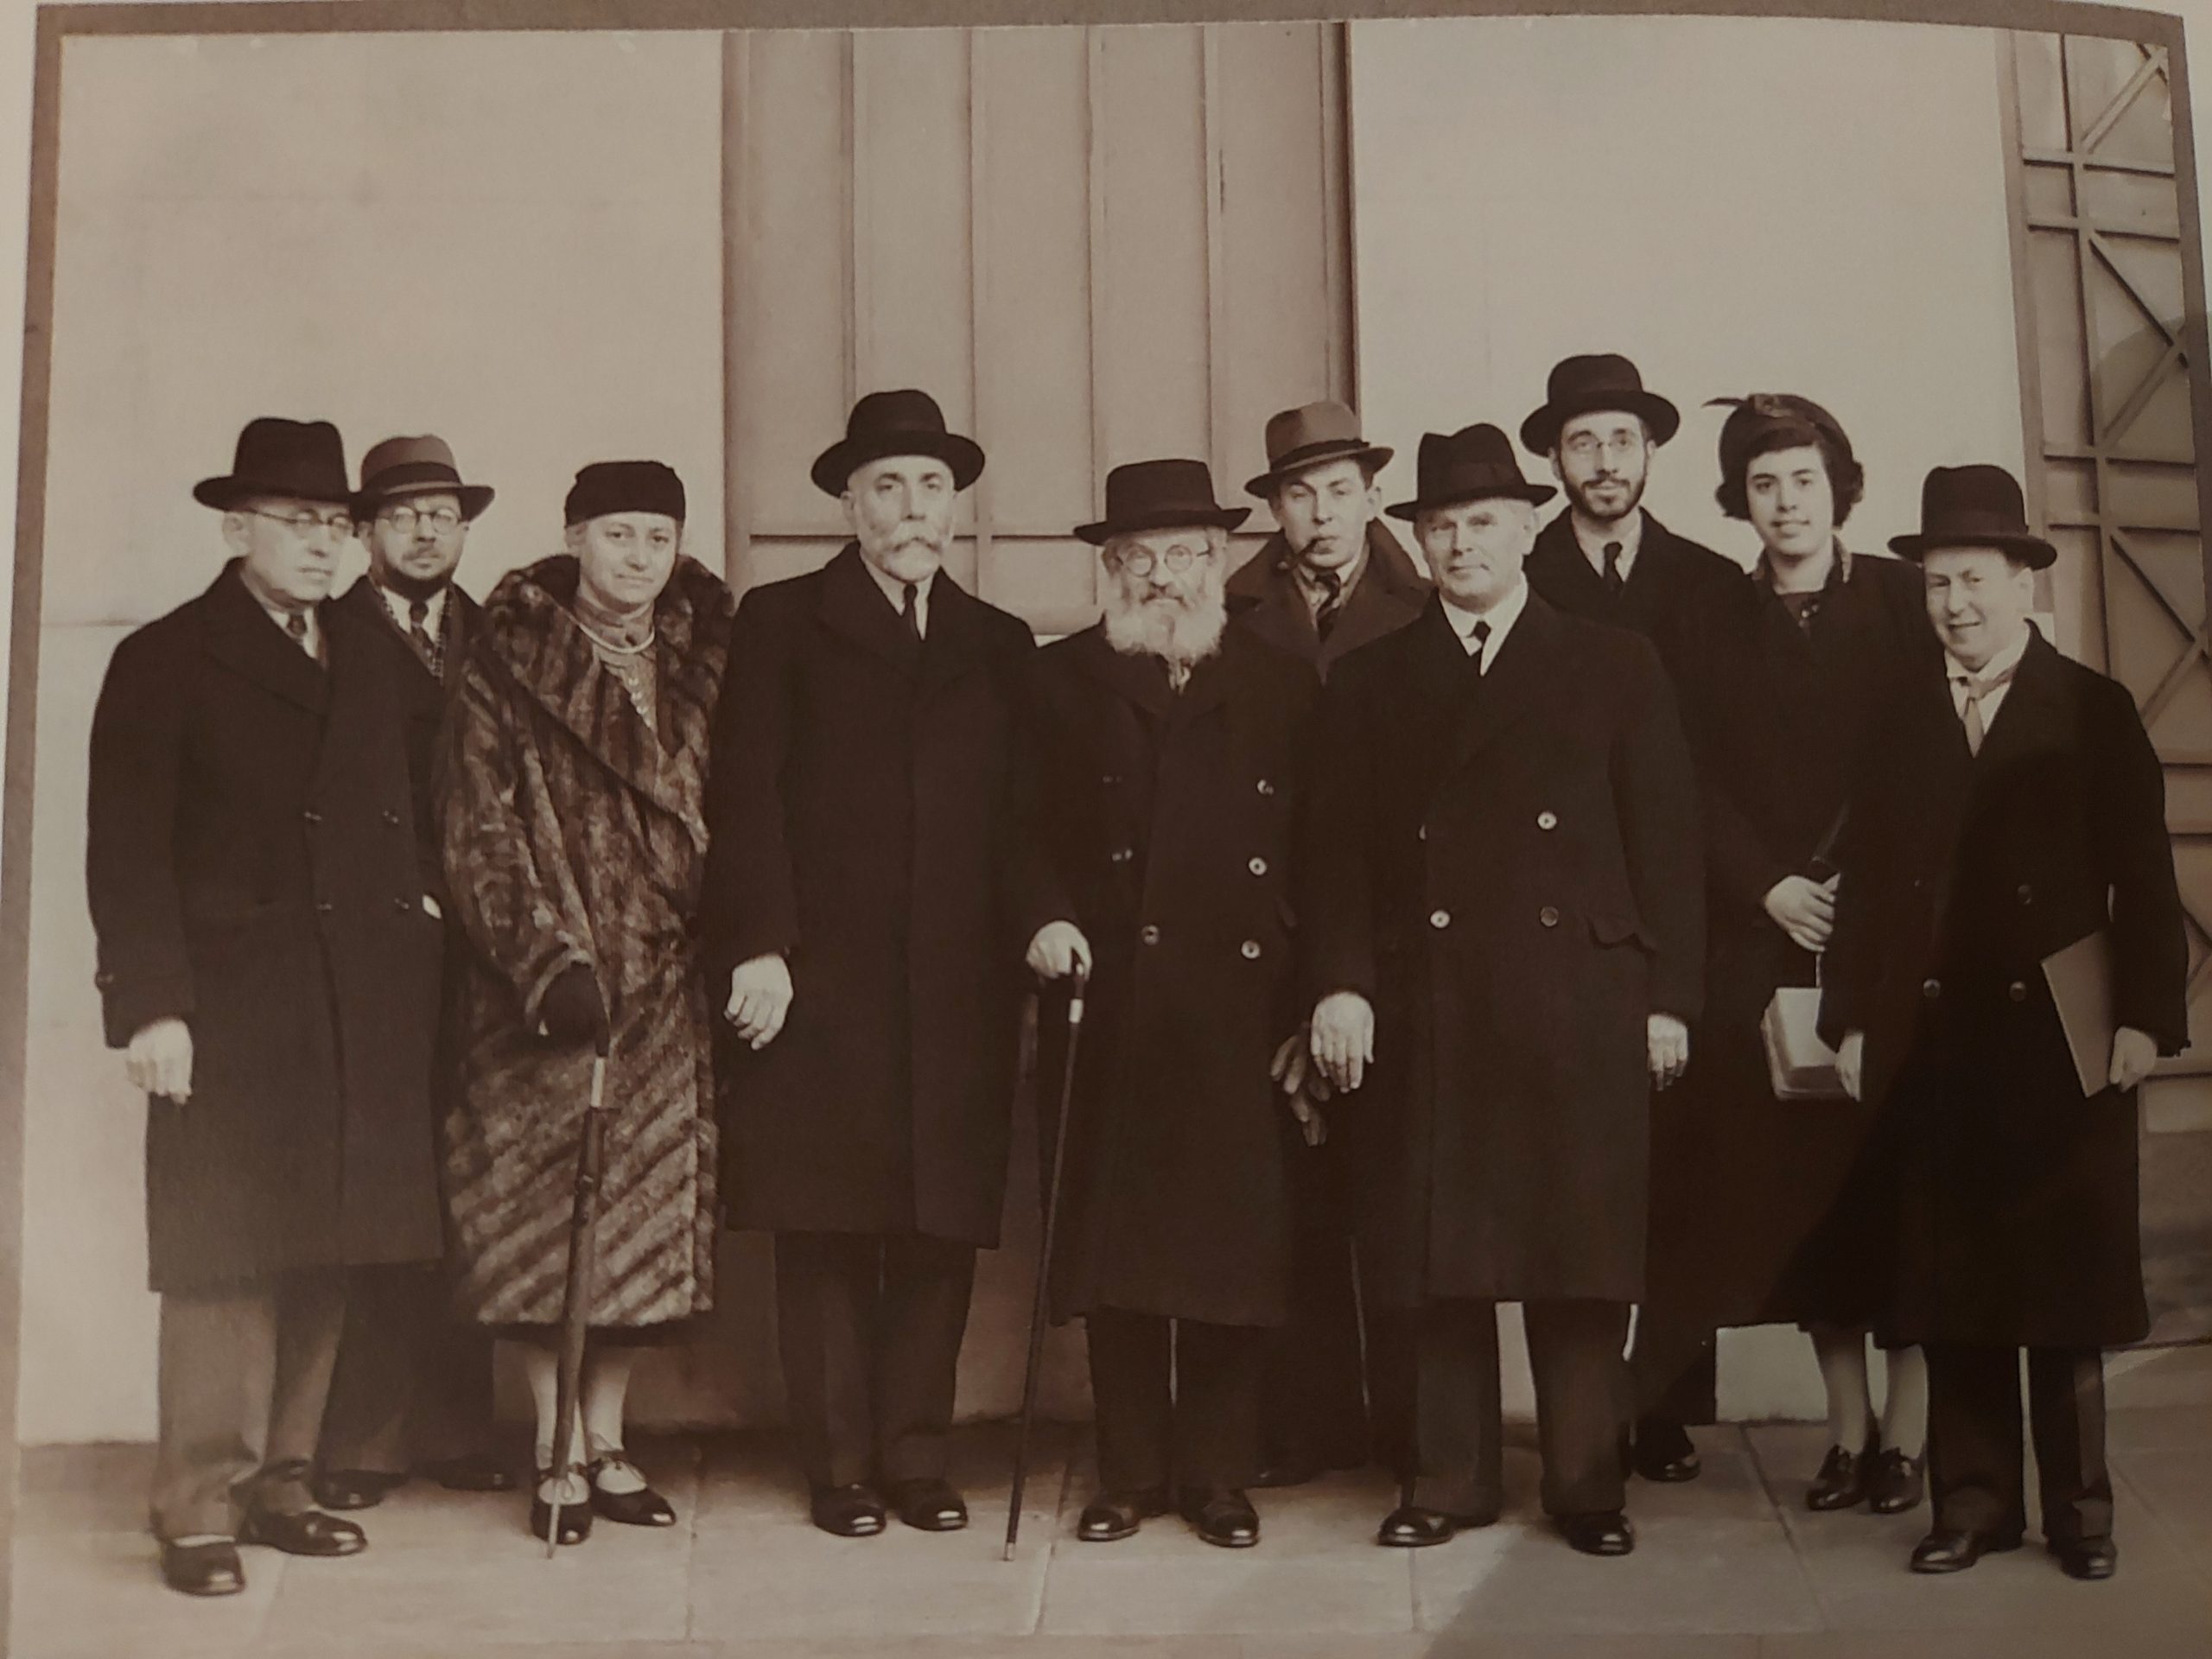 חיים הרצוג (חמישי מימין) מאחורי אביו הרב הרצוג בפגישתו עם יהודי לונדון